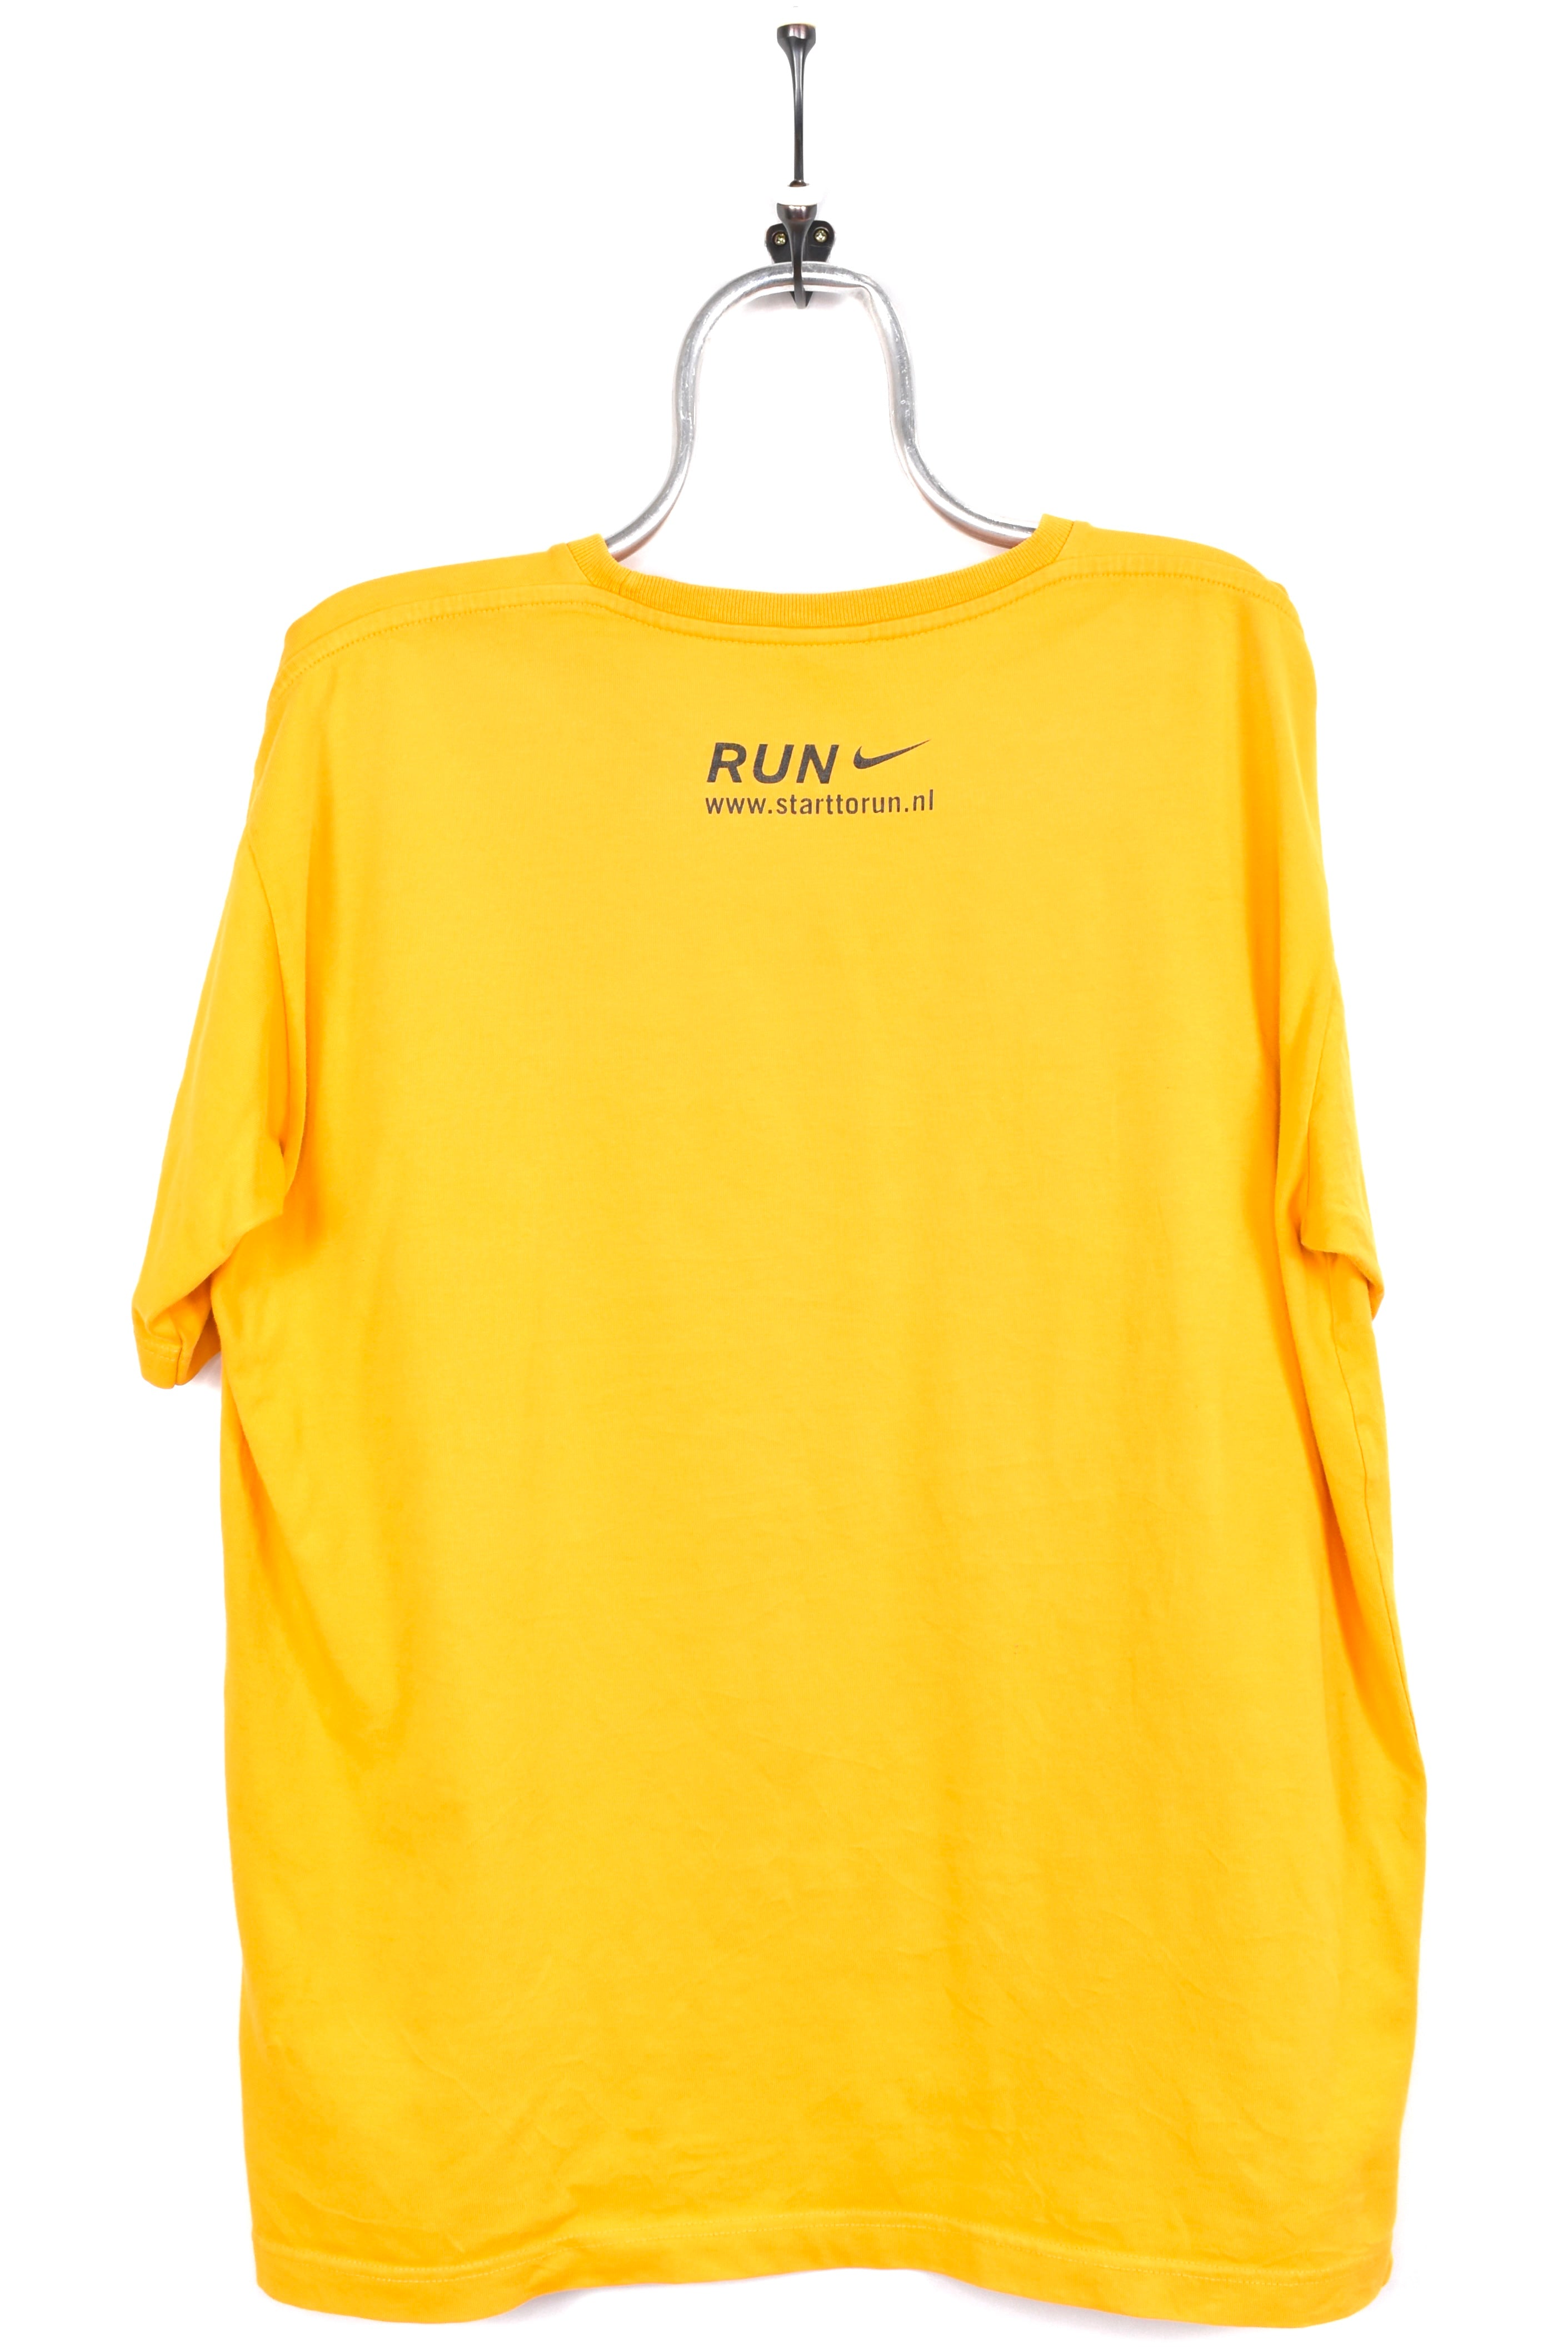 Vintage Nike shirt, Egmond marathon yellow graphic tee - AU XL NIKE